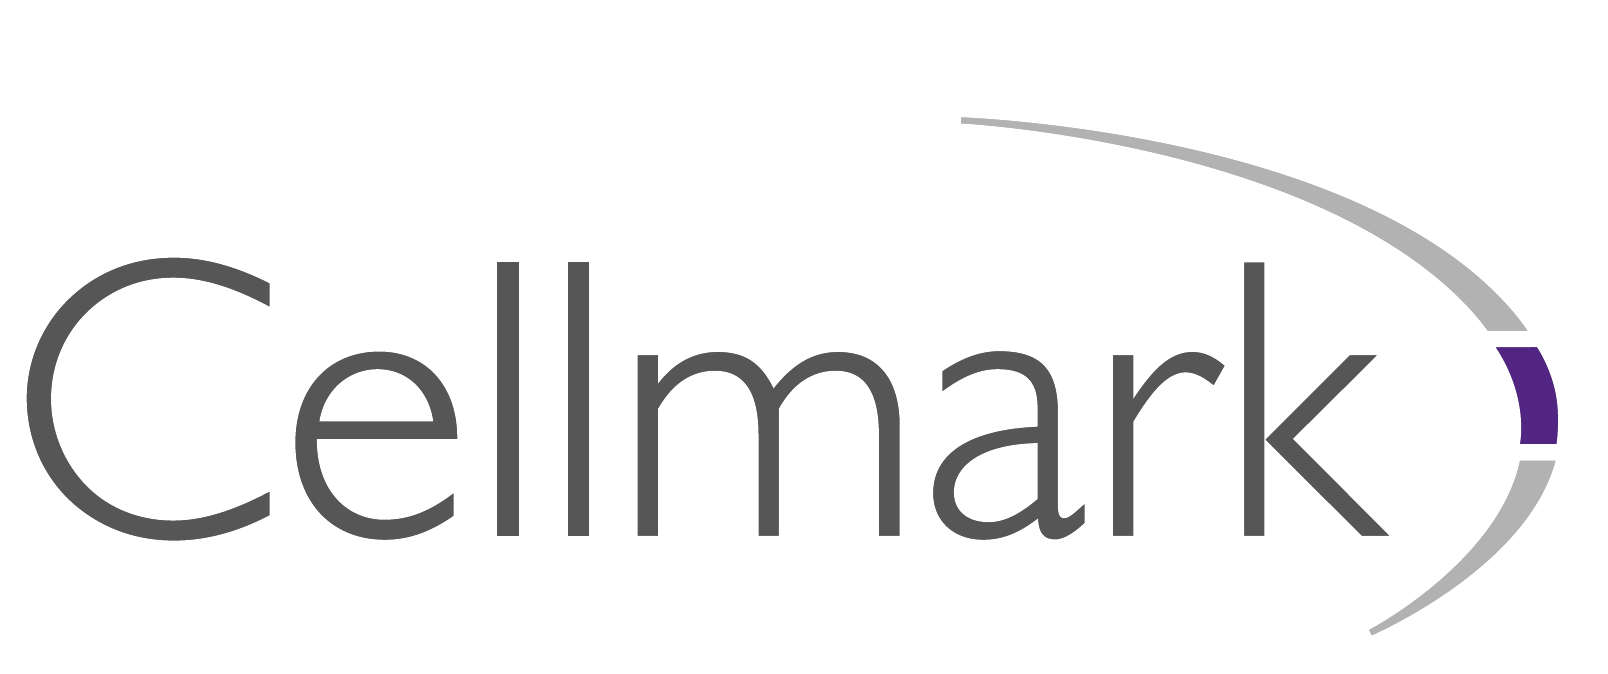 logo for Cellmark